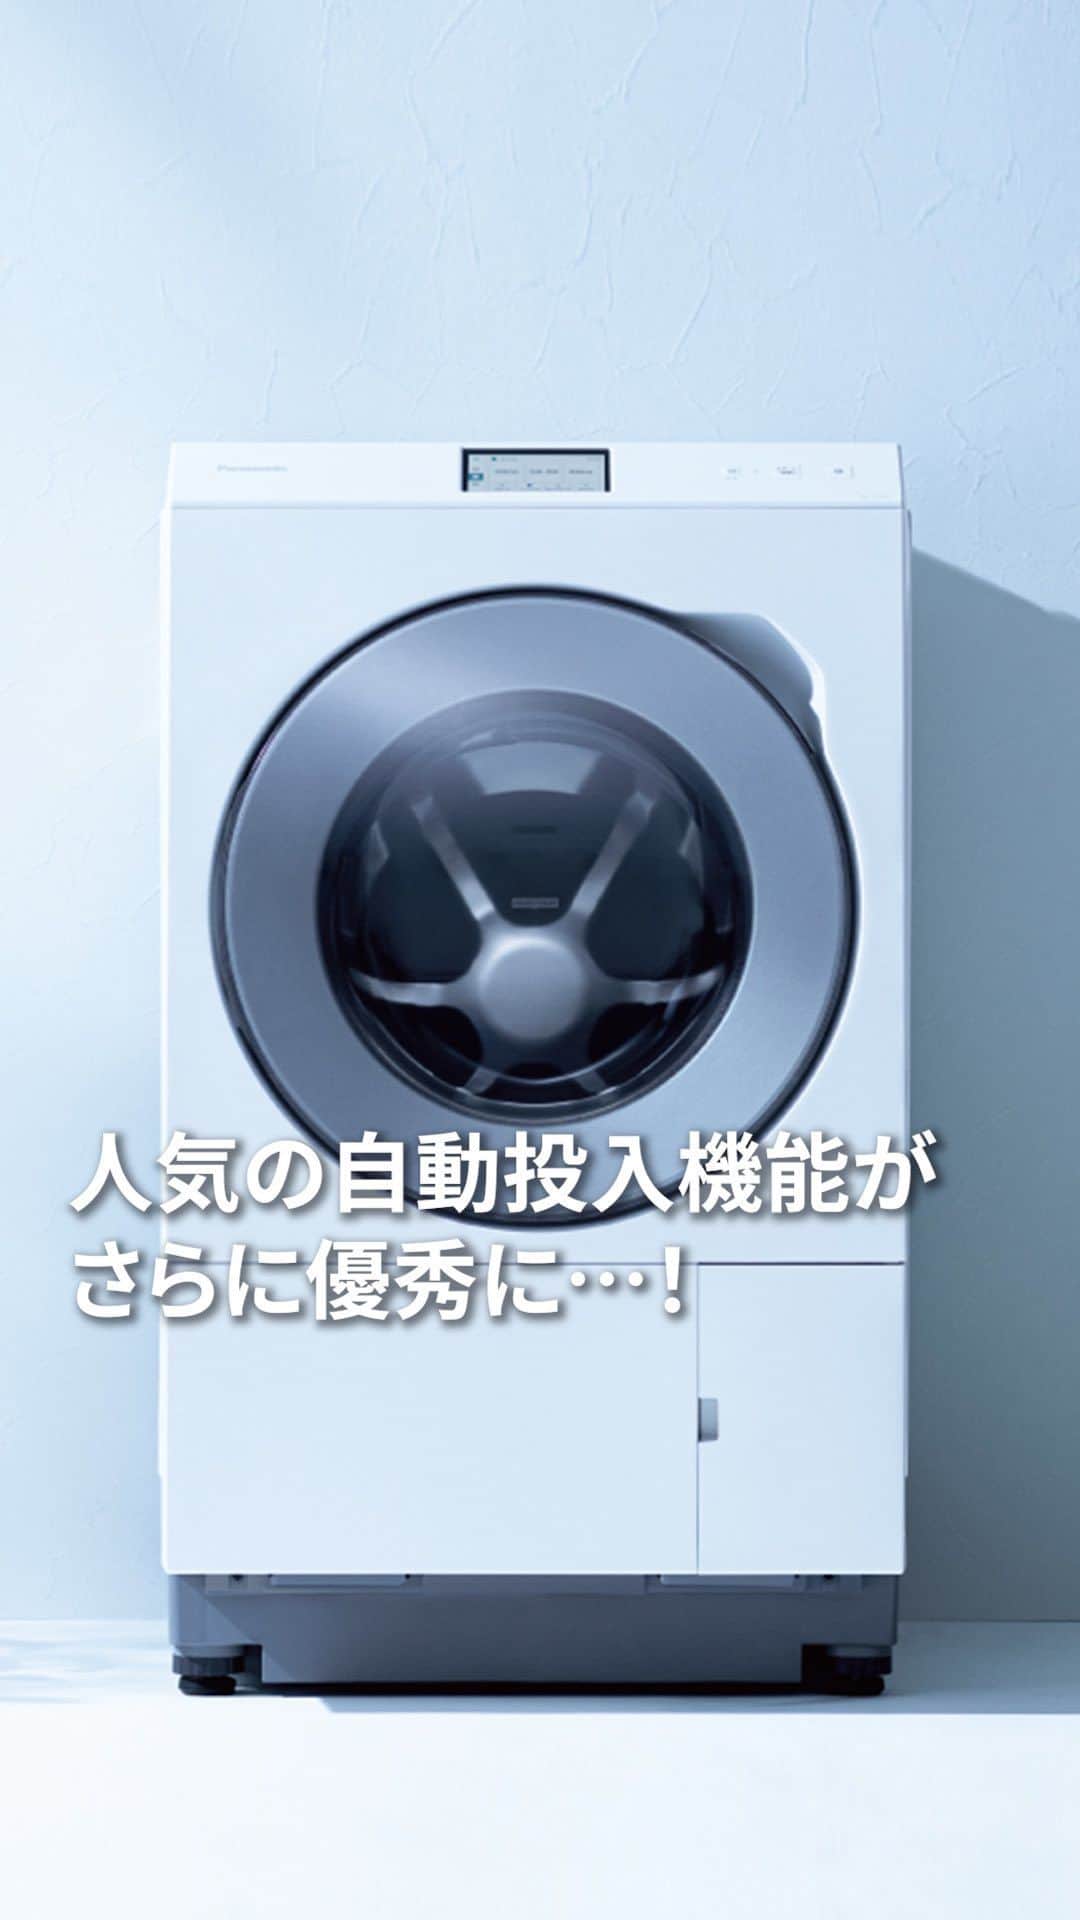 Panasonic ふだんプレミアムのインスタグラム：「「選べるタンク」今のあなたならどっちを入れる？  💛おしゃれ着洗剤 💚液体漂白剤  コメント欄で教えてください✨  ‐‐‐‐‐‐‐‐‐‐‐‐‐‐‐‐‐‐‐‐‐  10月新登場のドラム式洗濯乾燥機 NA-LX129C 今回の動画では新しい特長の一部を中心に紹介しています✅  動画で説明しきれなかった機能も盛りだくさんなので、気になった方はチェックしてみてくださいね♪  ‐‐‐‐‐‐‐‐‐‐‐‐‐‐‐‐‐‐‐‐‐  #パナソニック洗濯機 #panasonic洗濯機 #洗濯乾燥機 #ななめドラム洗濯乾燥機 #ドラム式洗濯乾燥機 #ドラム式洗濯機 #洗濯機 #洗濯機購入 #乾燥機付き洗濯機 #洗濯機買い替え #洗濯愛してる会 #洗濯好きな人と繋がりたい #スチーマー #衣類ケア #ヒートポンプ式乾燥 #ナノイーX #nanonex #時短家事 #時短家電 #楽家事 #家事楽 #暮らし #おうち時間 #家電 #家事 #パナソニック家電 #パナソニック #panasonic」